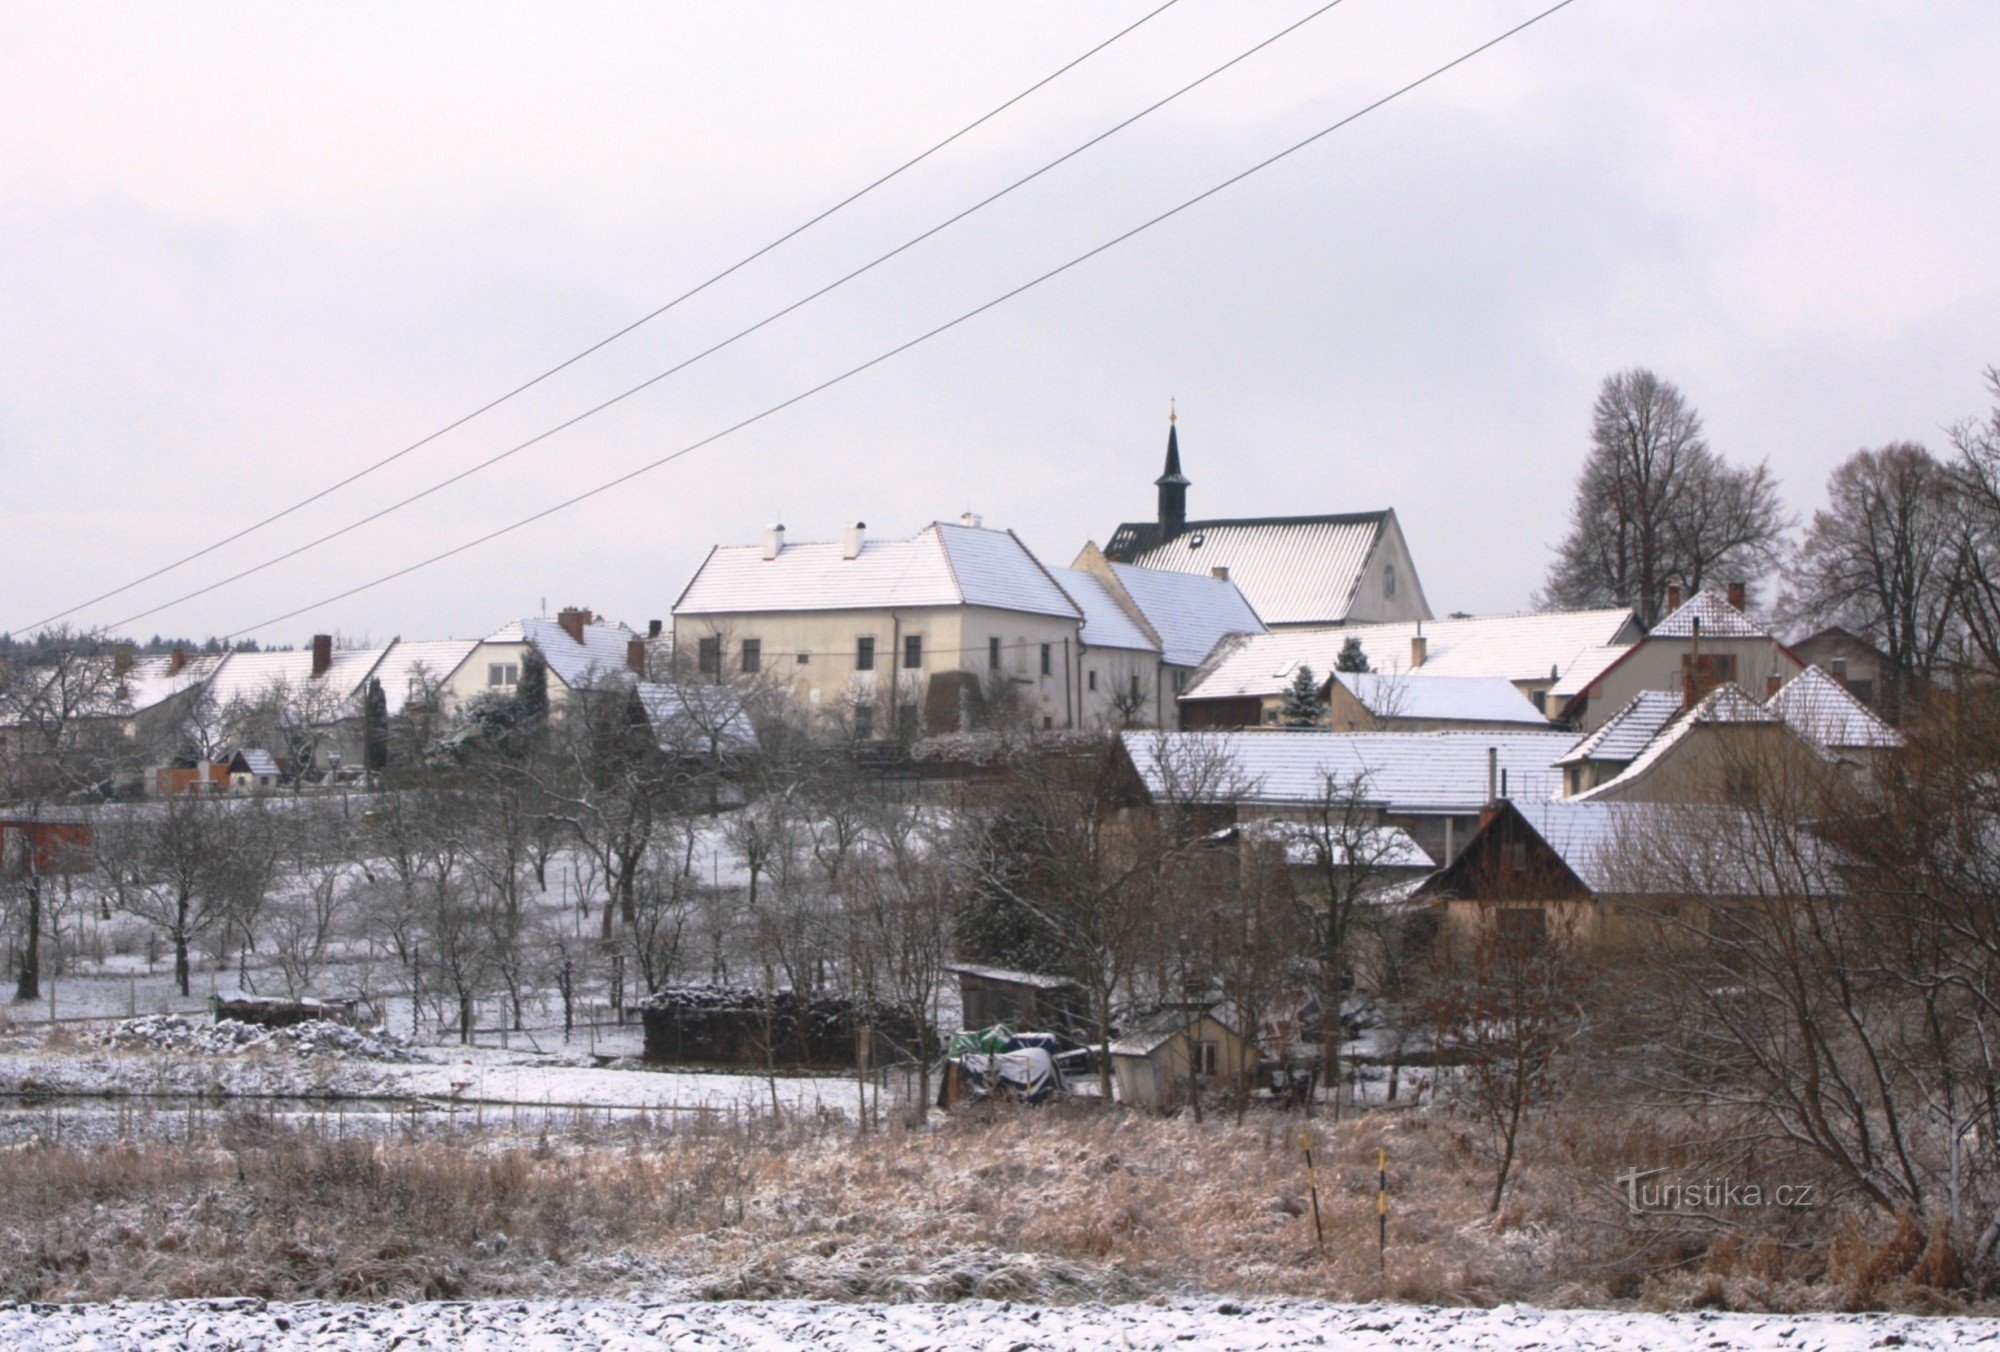 Ronov - generel udsigt over landsbyen